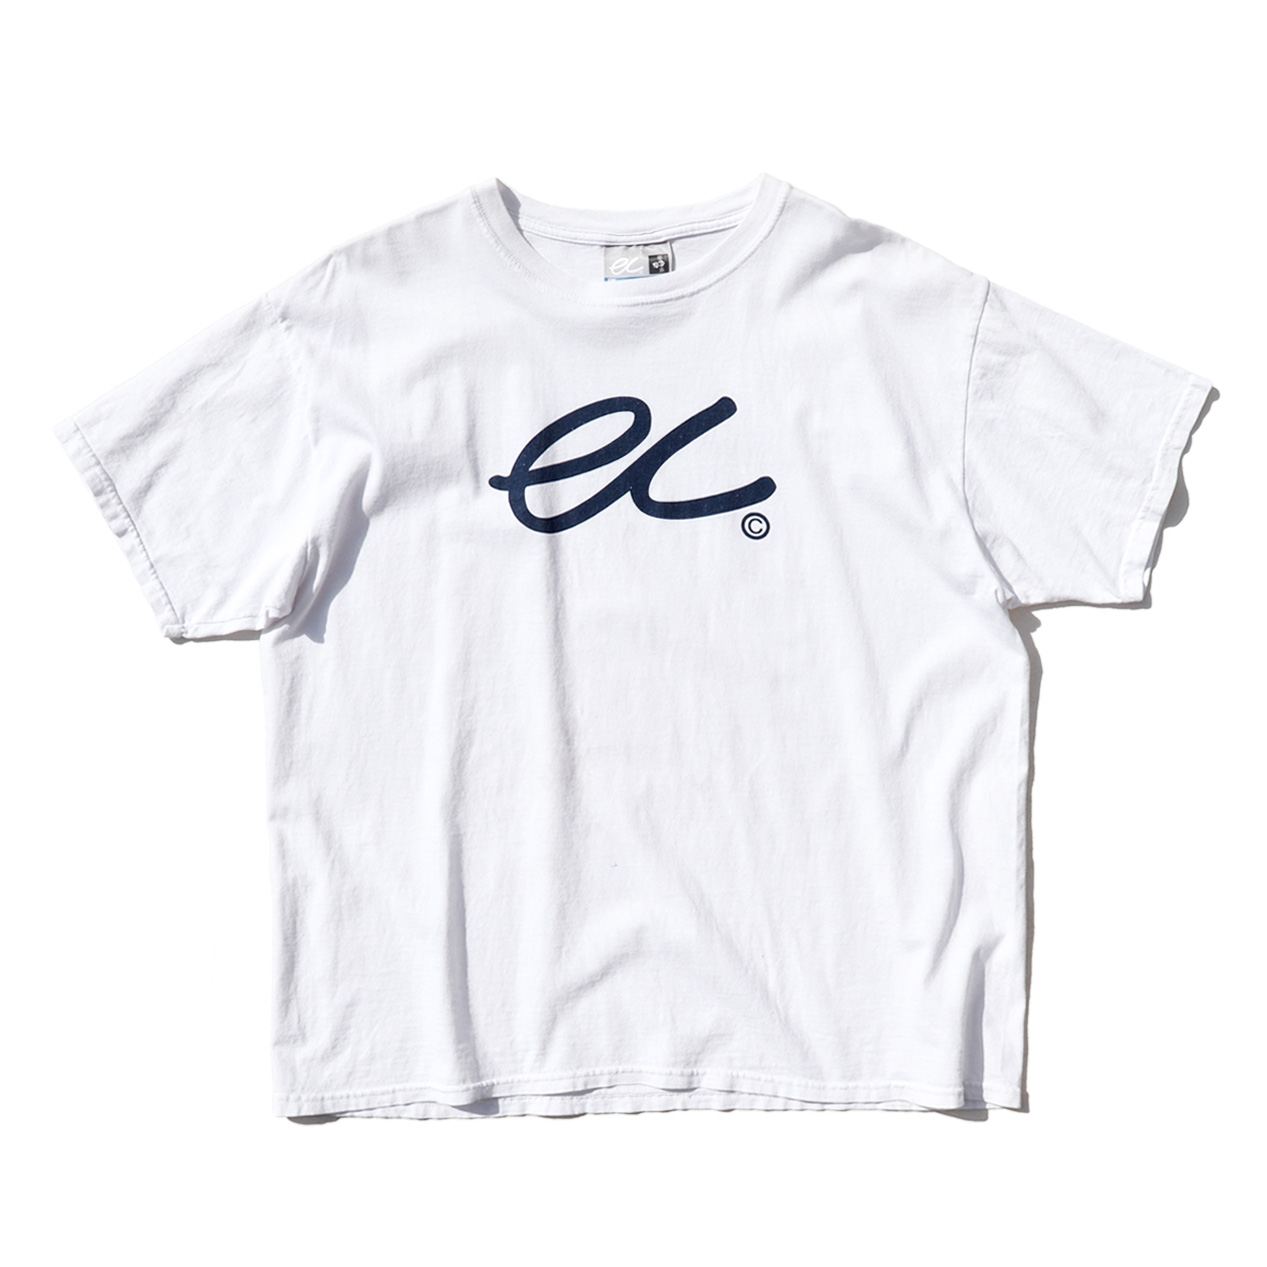 即納可能 - 【Eric Clapton】 エリッククラプトン ツアーTシャツ 両面